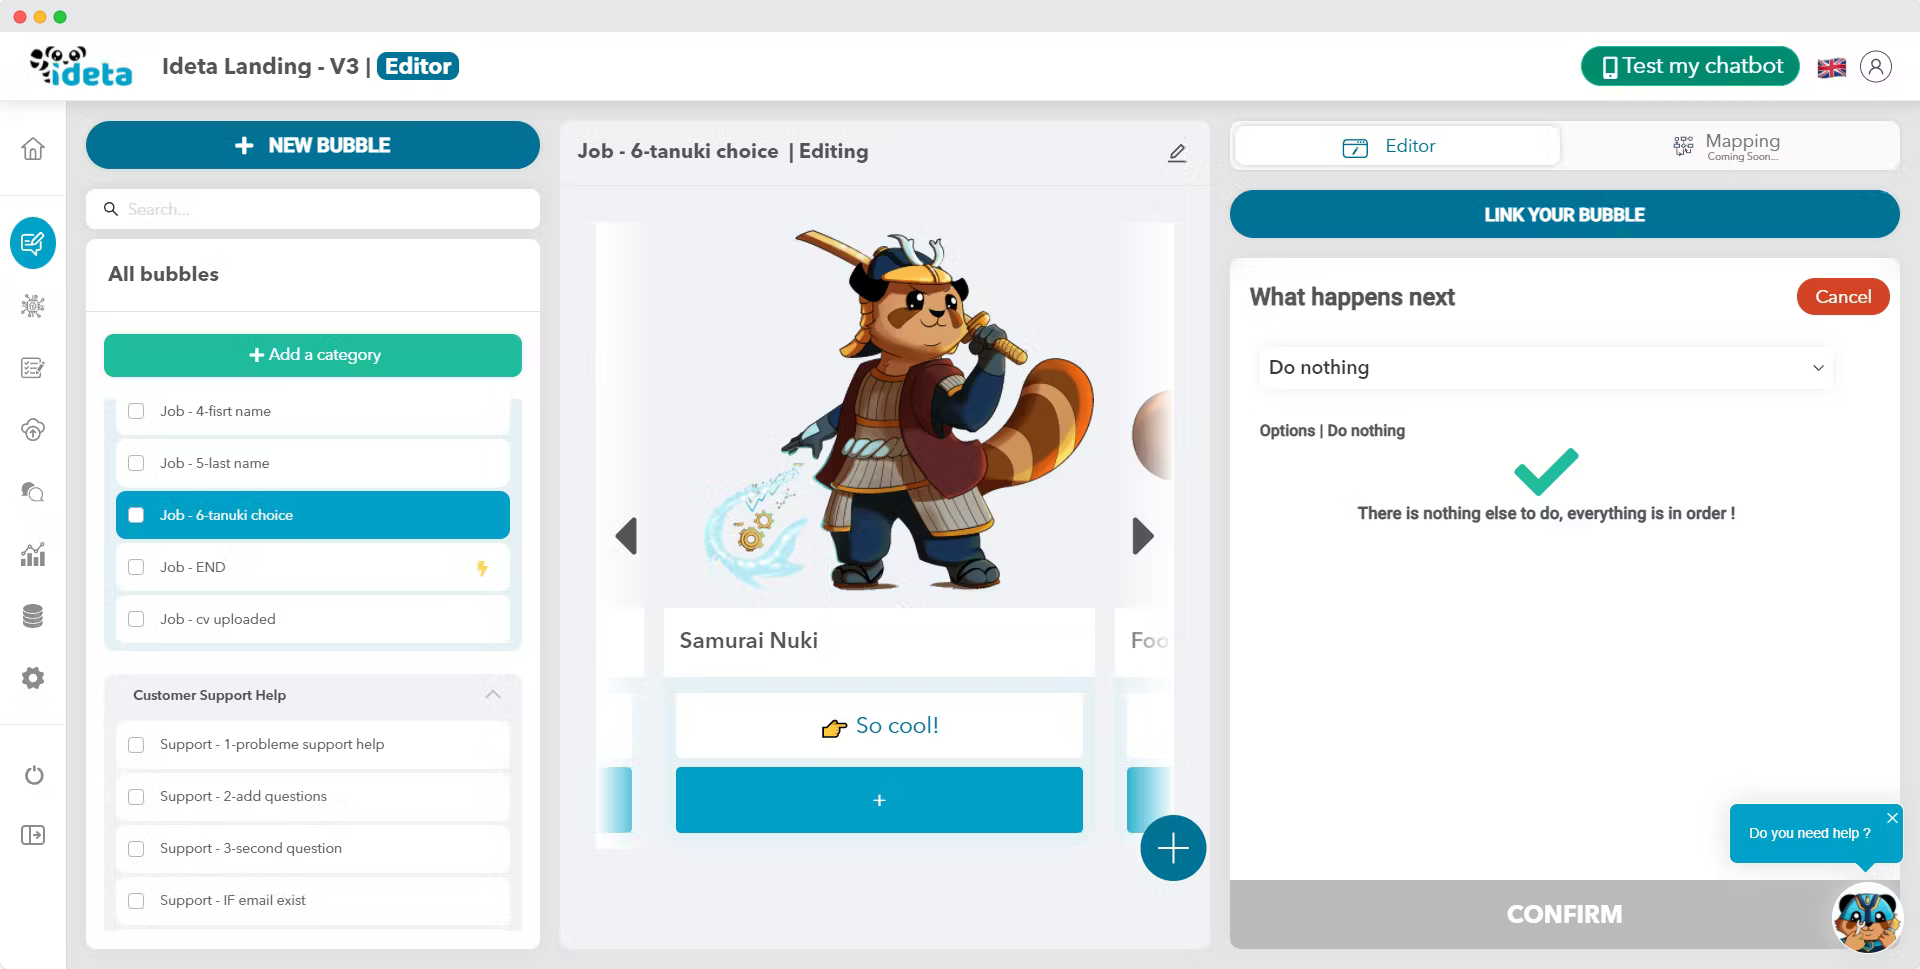 Het aanpassingsscherm voor de chatbot van Ideta